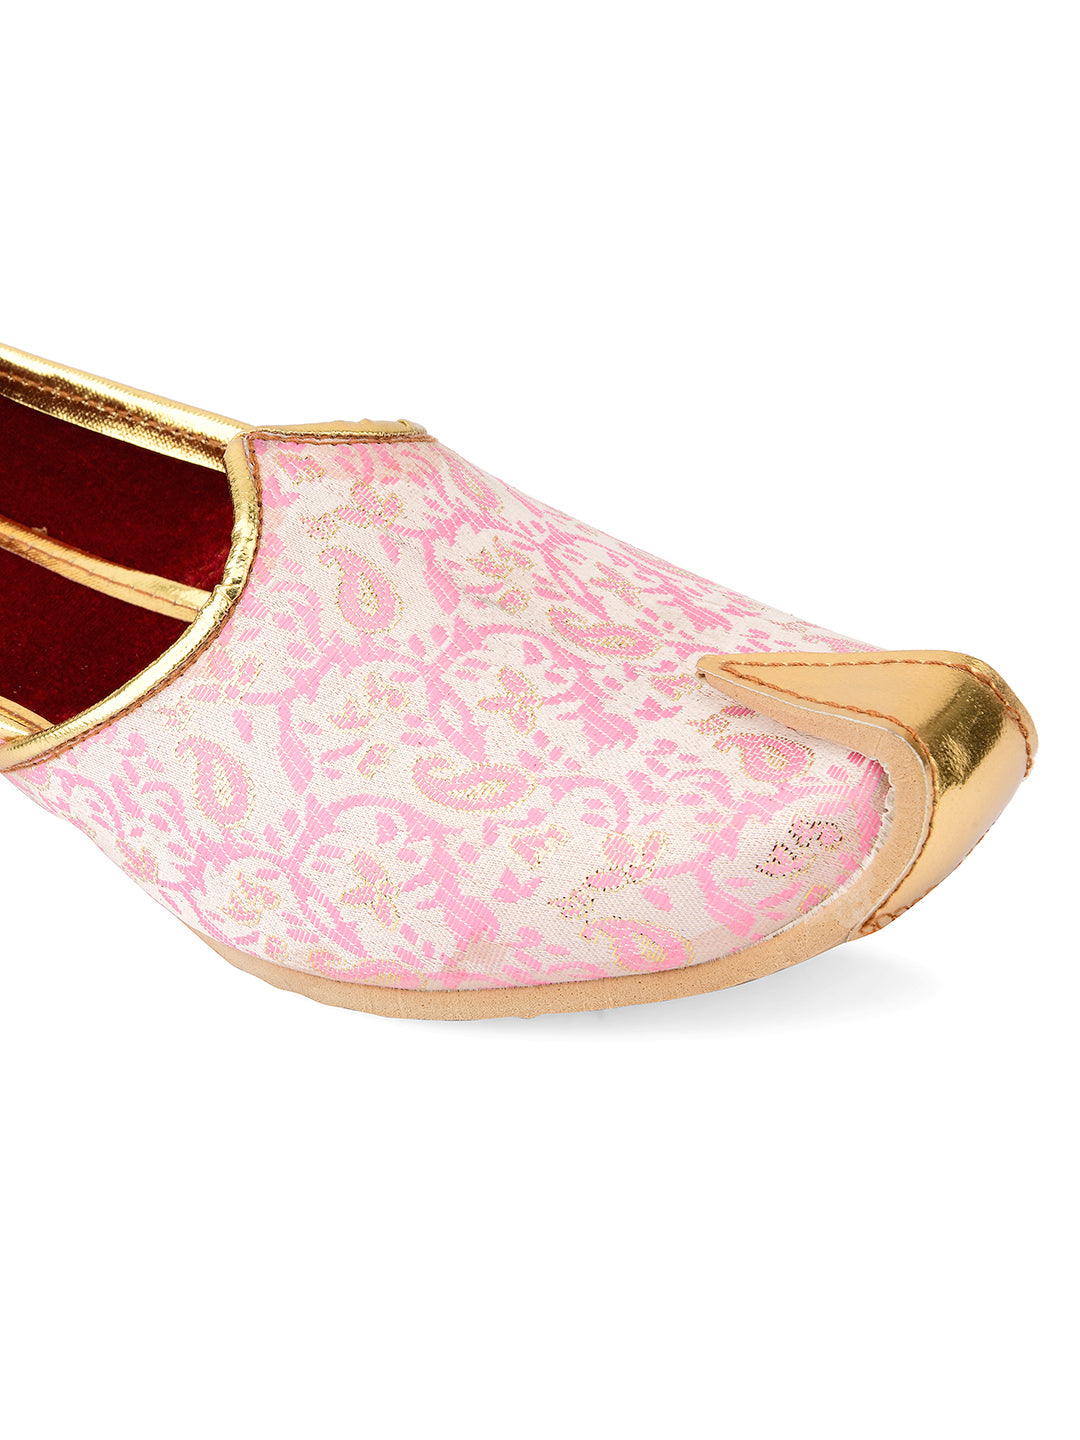 DESI COLOUR Mens Pink Ethnic Footwear/Punjabi Jutti